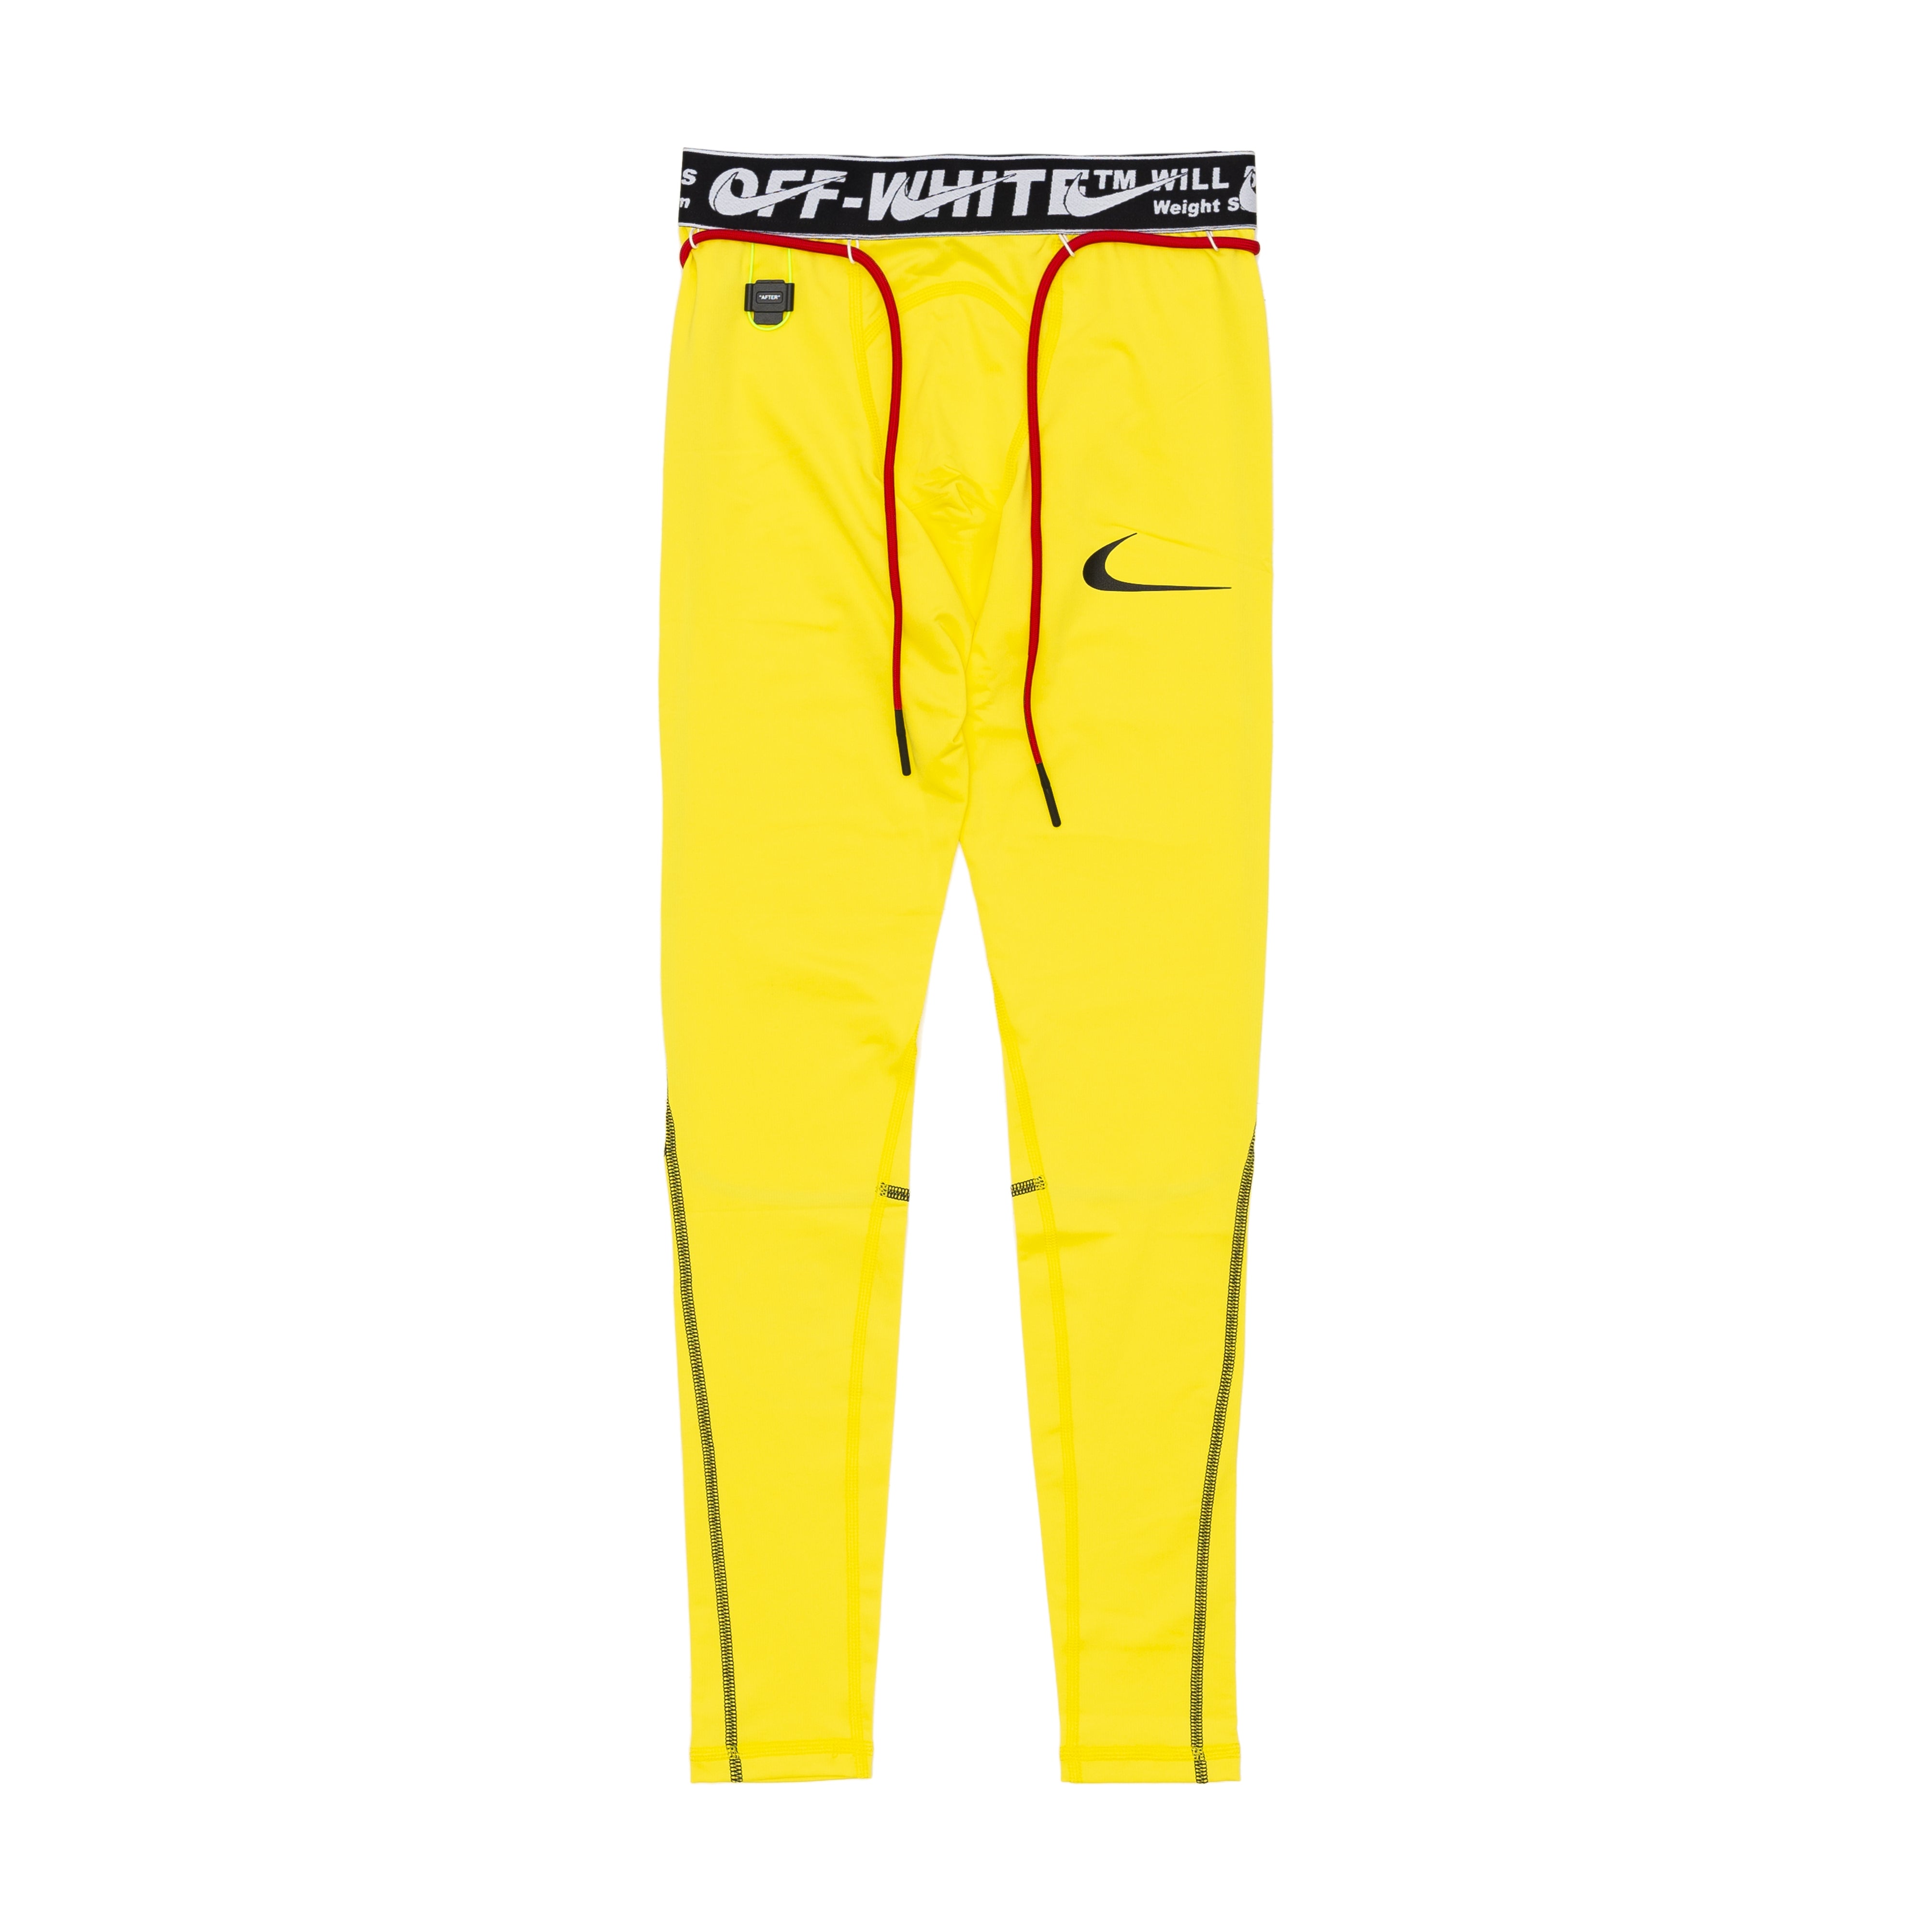 x Off-White Men'S Tights (Yellow) Dover Street Market York E-Shop – DSMNY E-SHOP